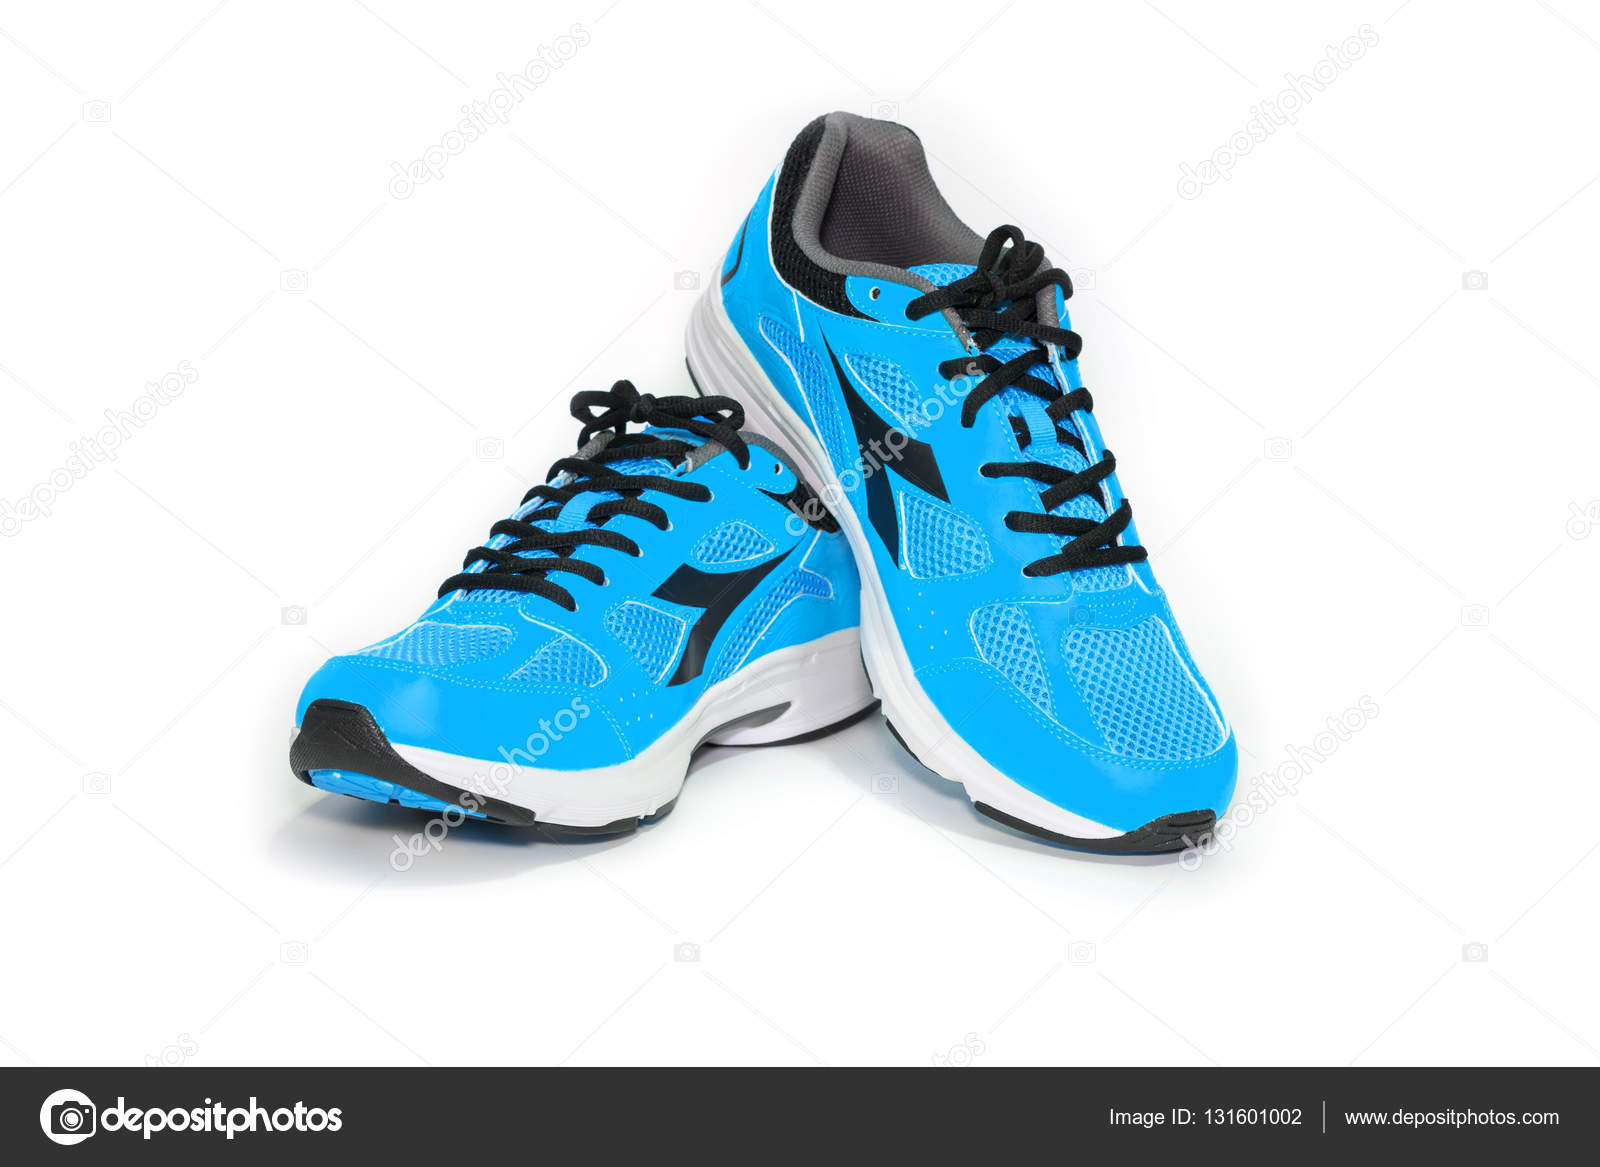 renderen Crimineel moordenaar Shoe running sport – Stock Editorial Photo © tayphotodesign #131601002